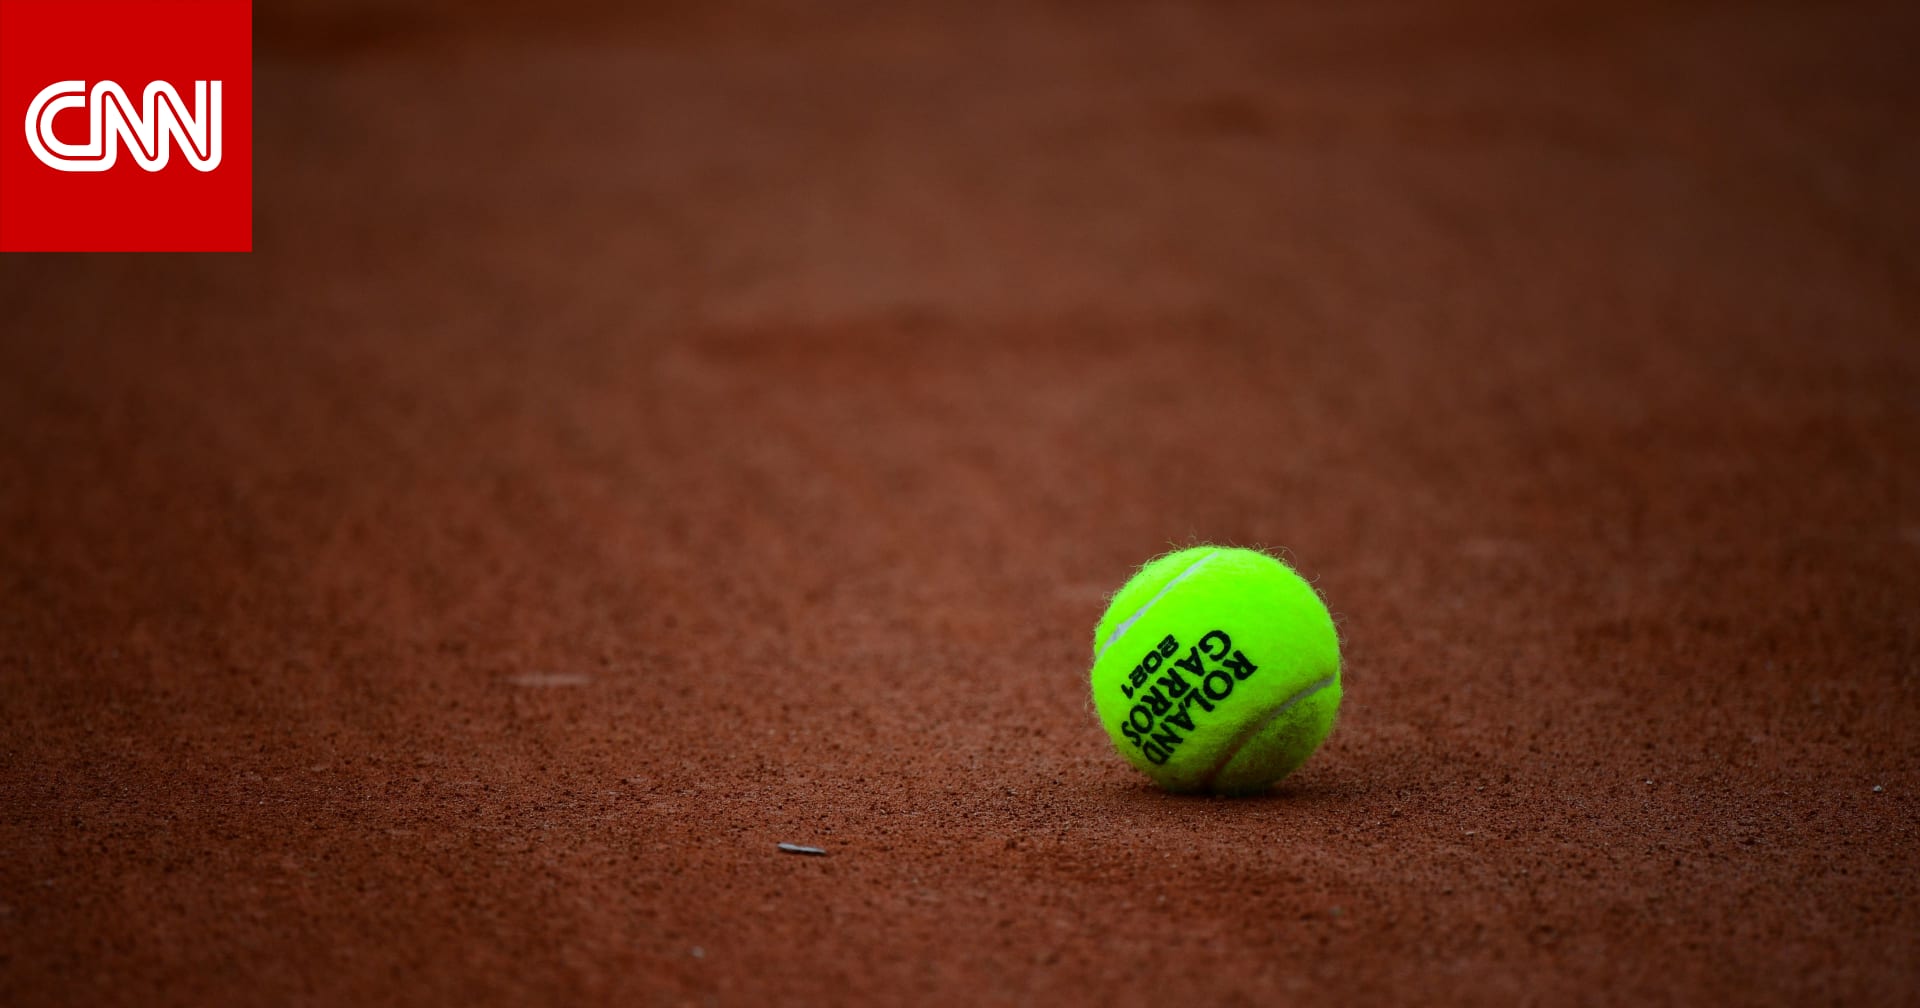 اعتقال لاعبة التنس الروسية سيزيكوفا في فرنسا بتهمة الفساد والاحتيال الرياضي